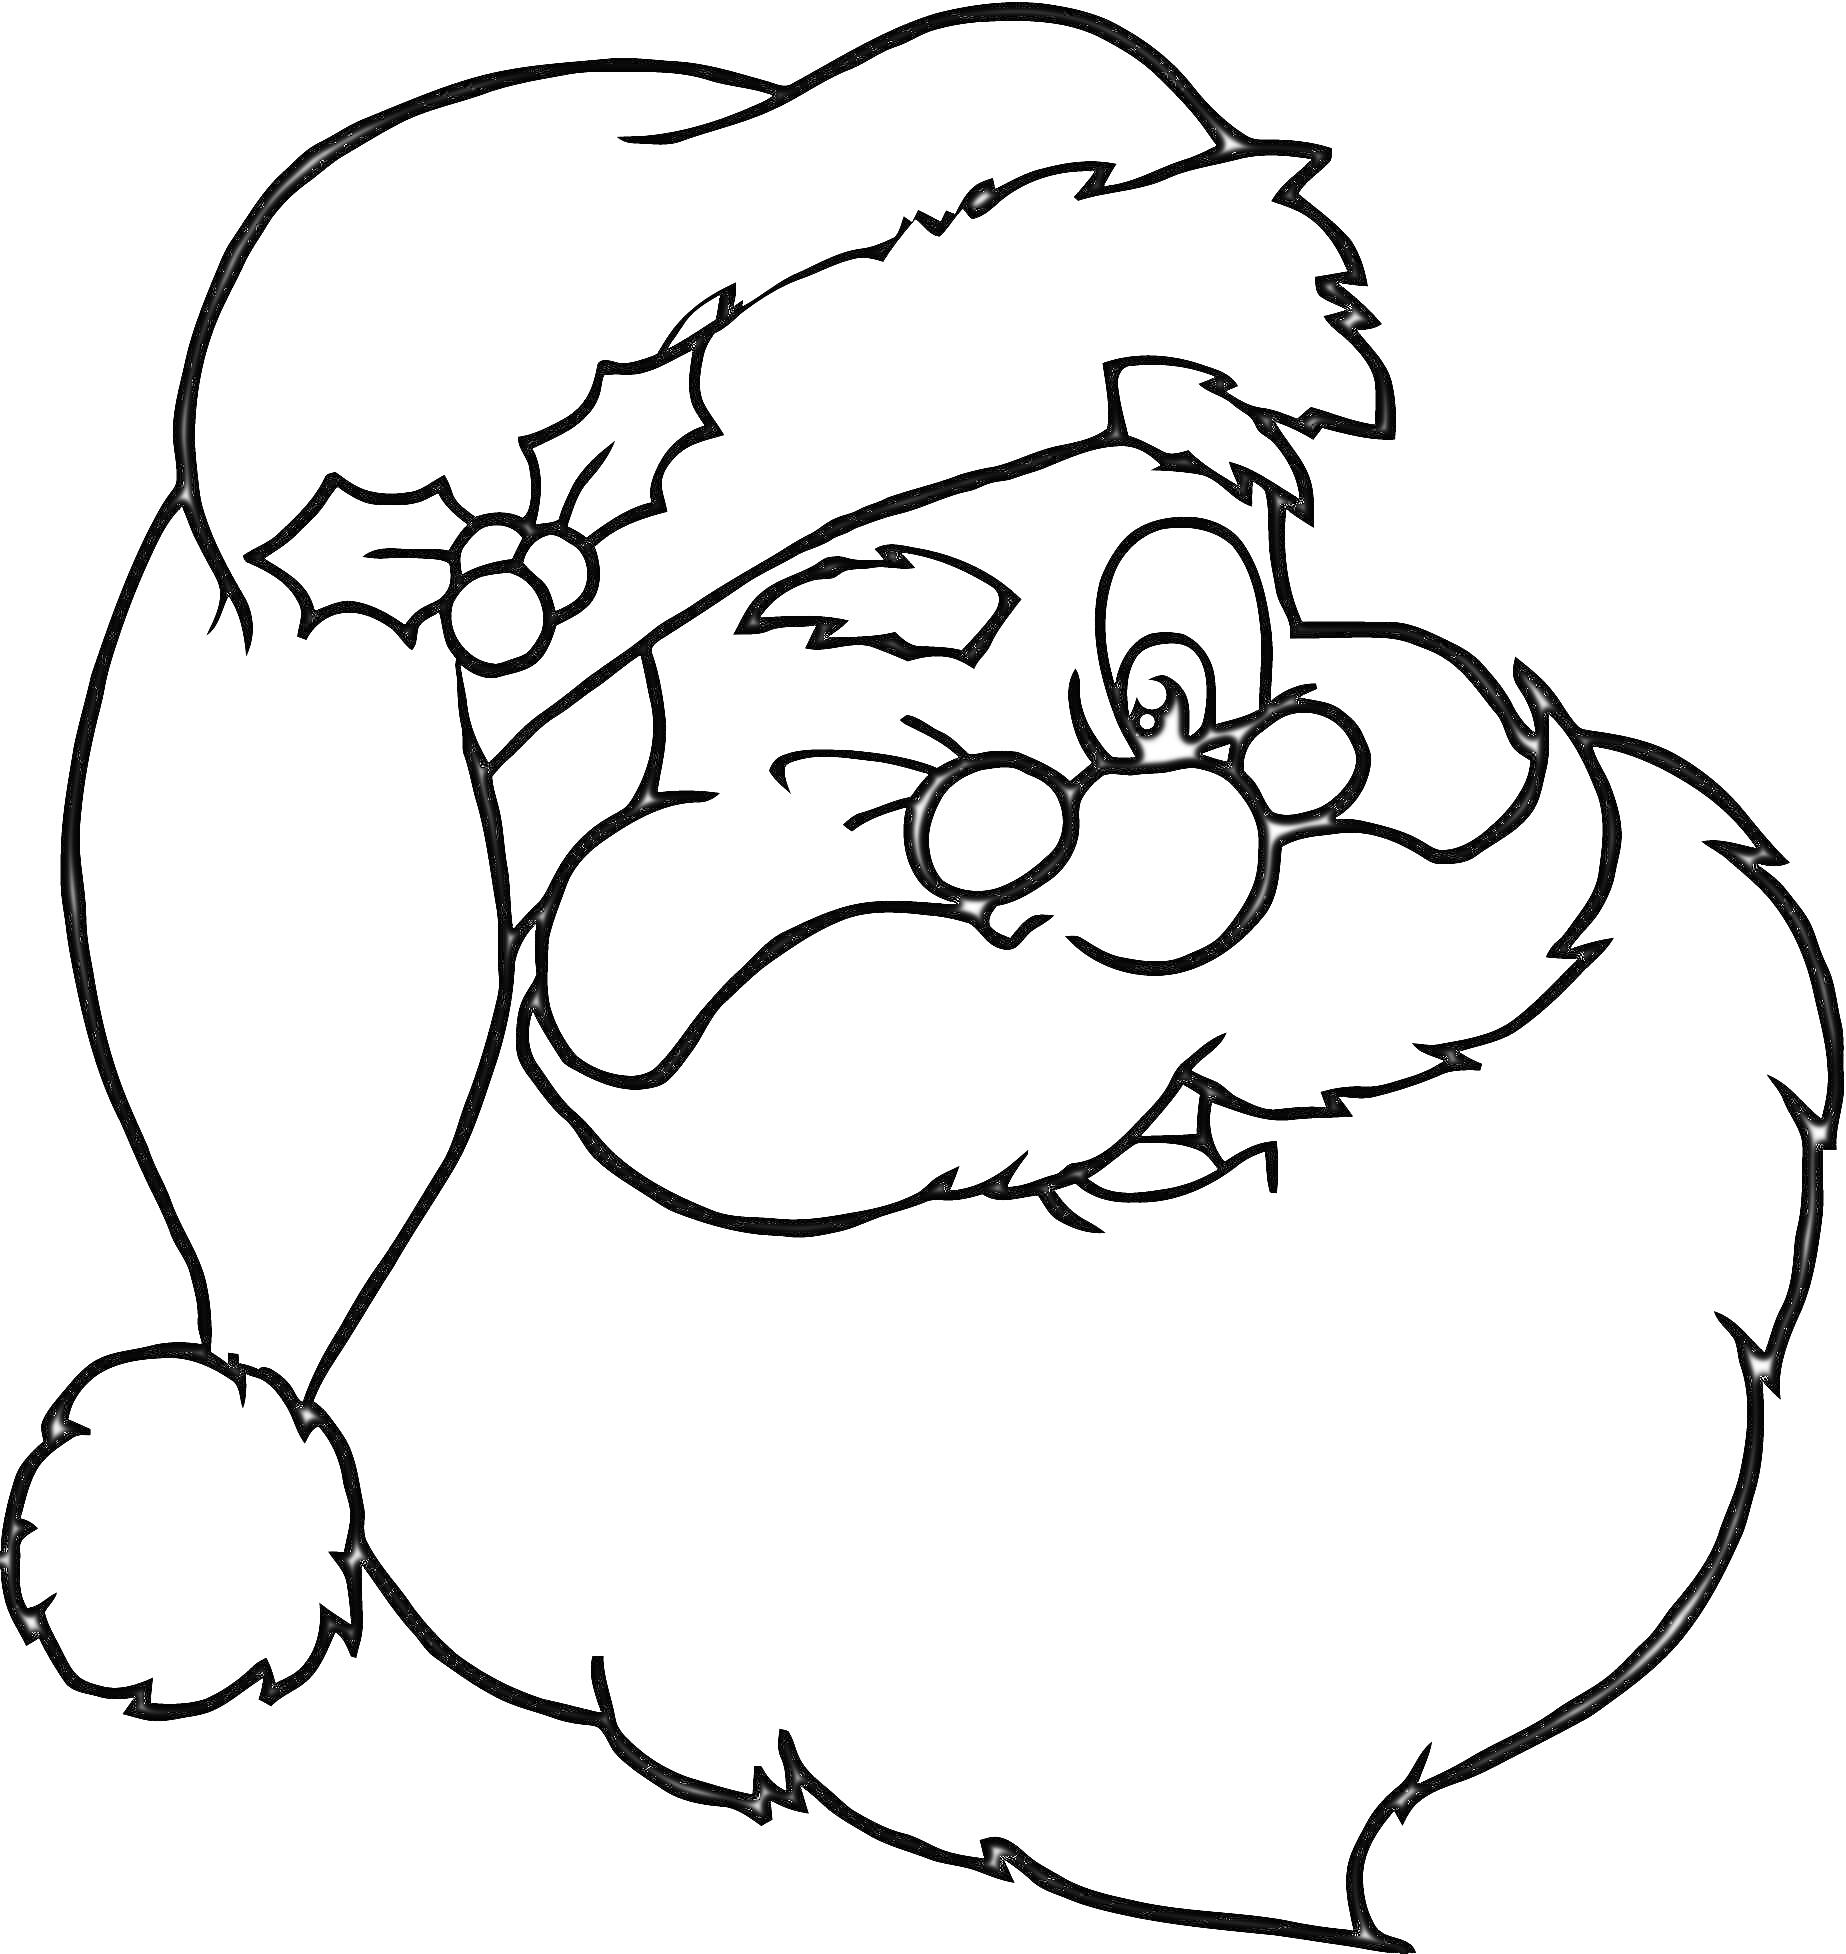 Санта Клаус с помпонистой шапкой, бородой и омелой